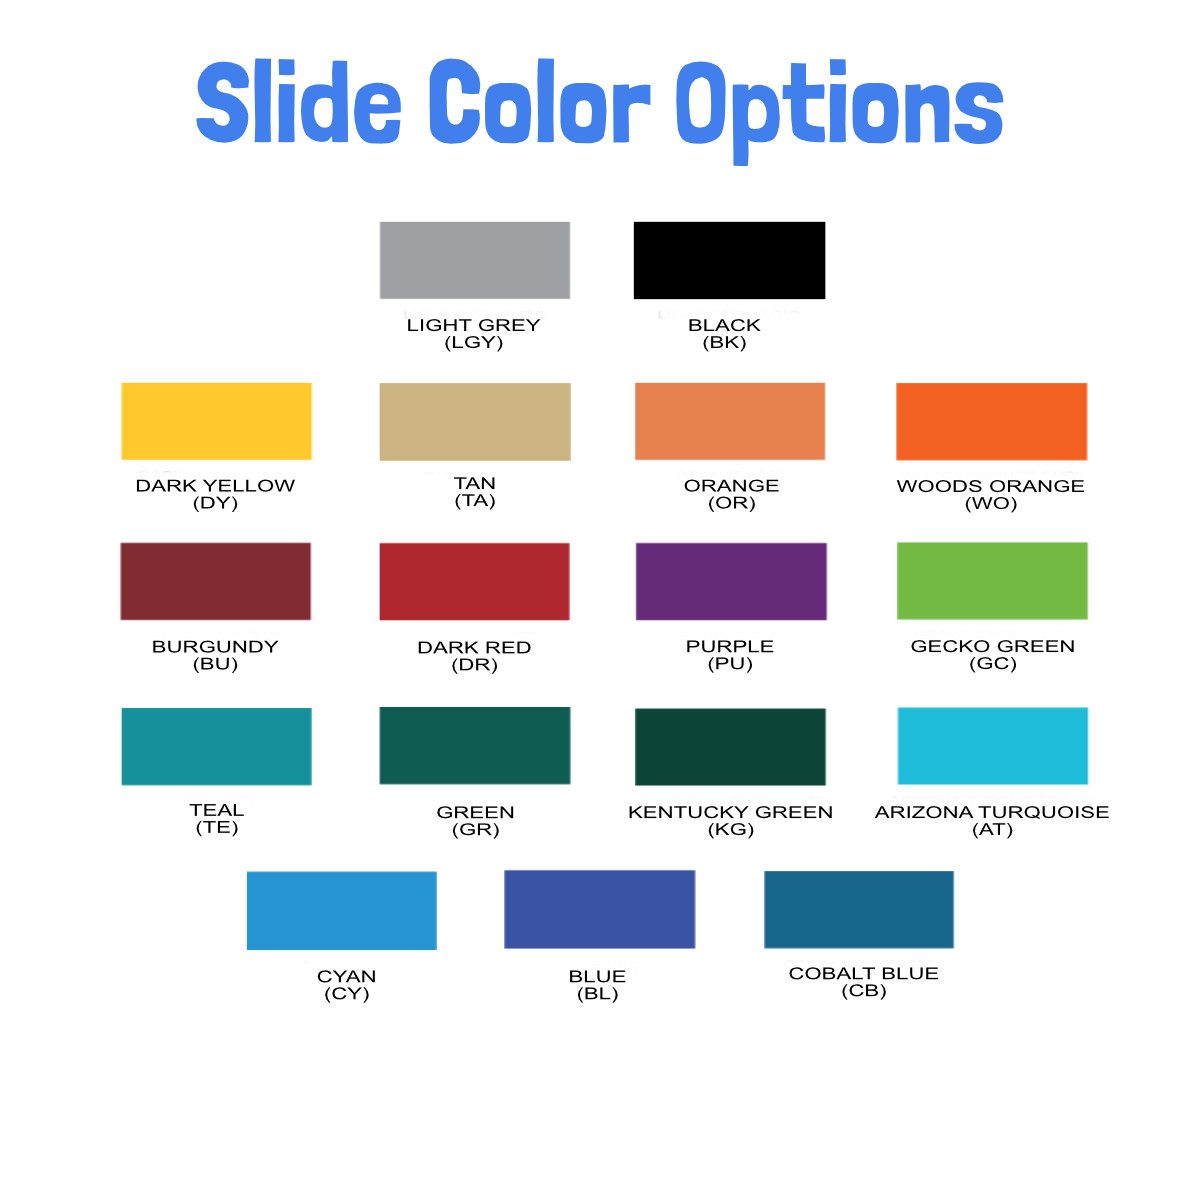 SPI Standard Slide Color Option